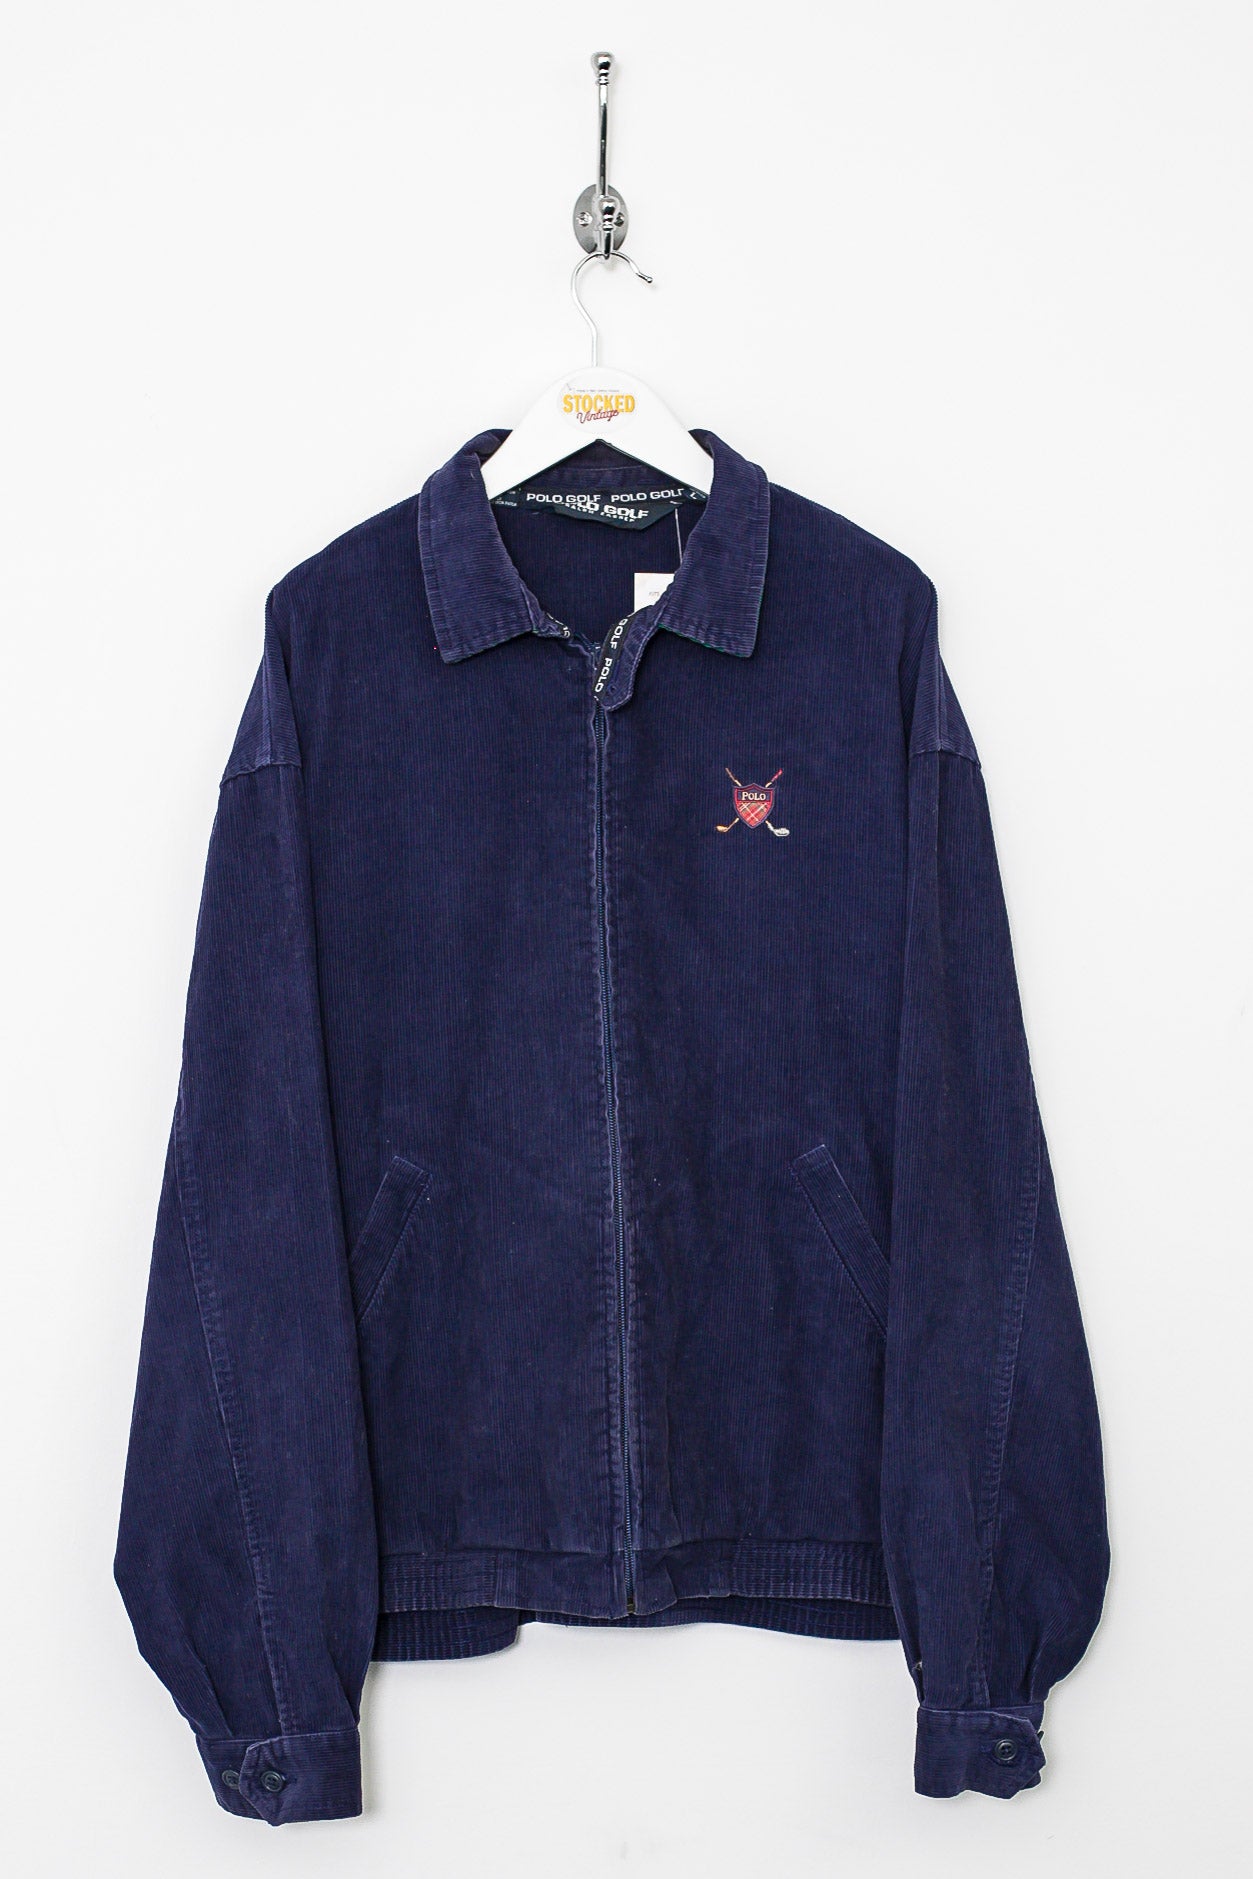 90s Ralph Lauren Corduroy Jacket (L) – Stocked Vintage